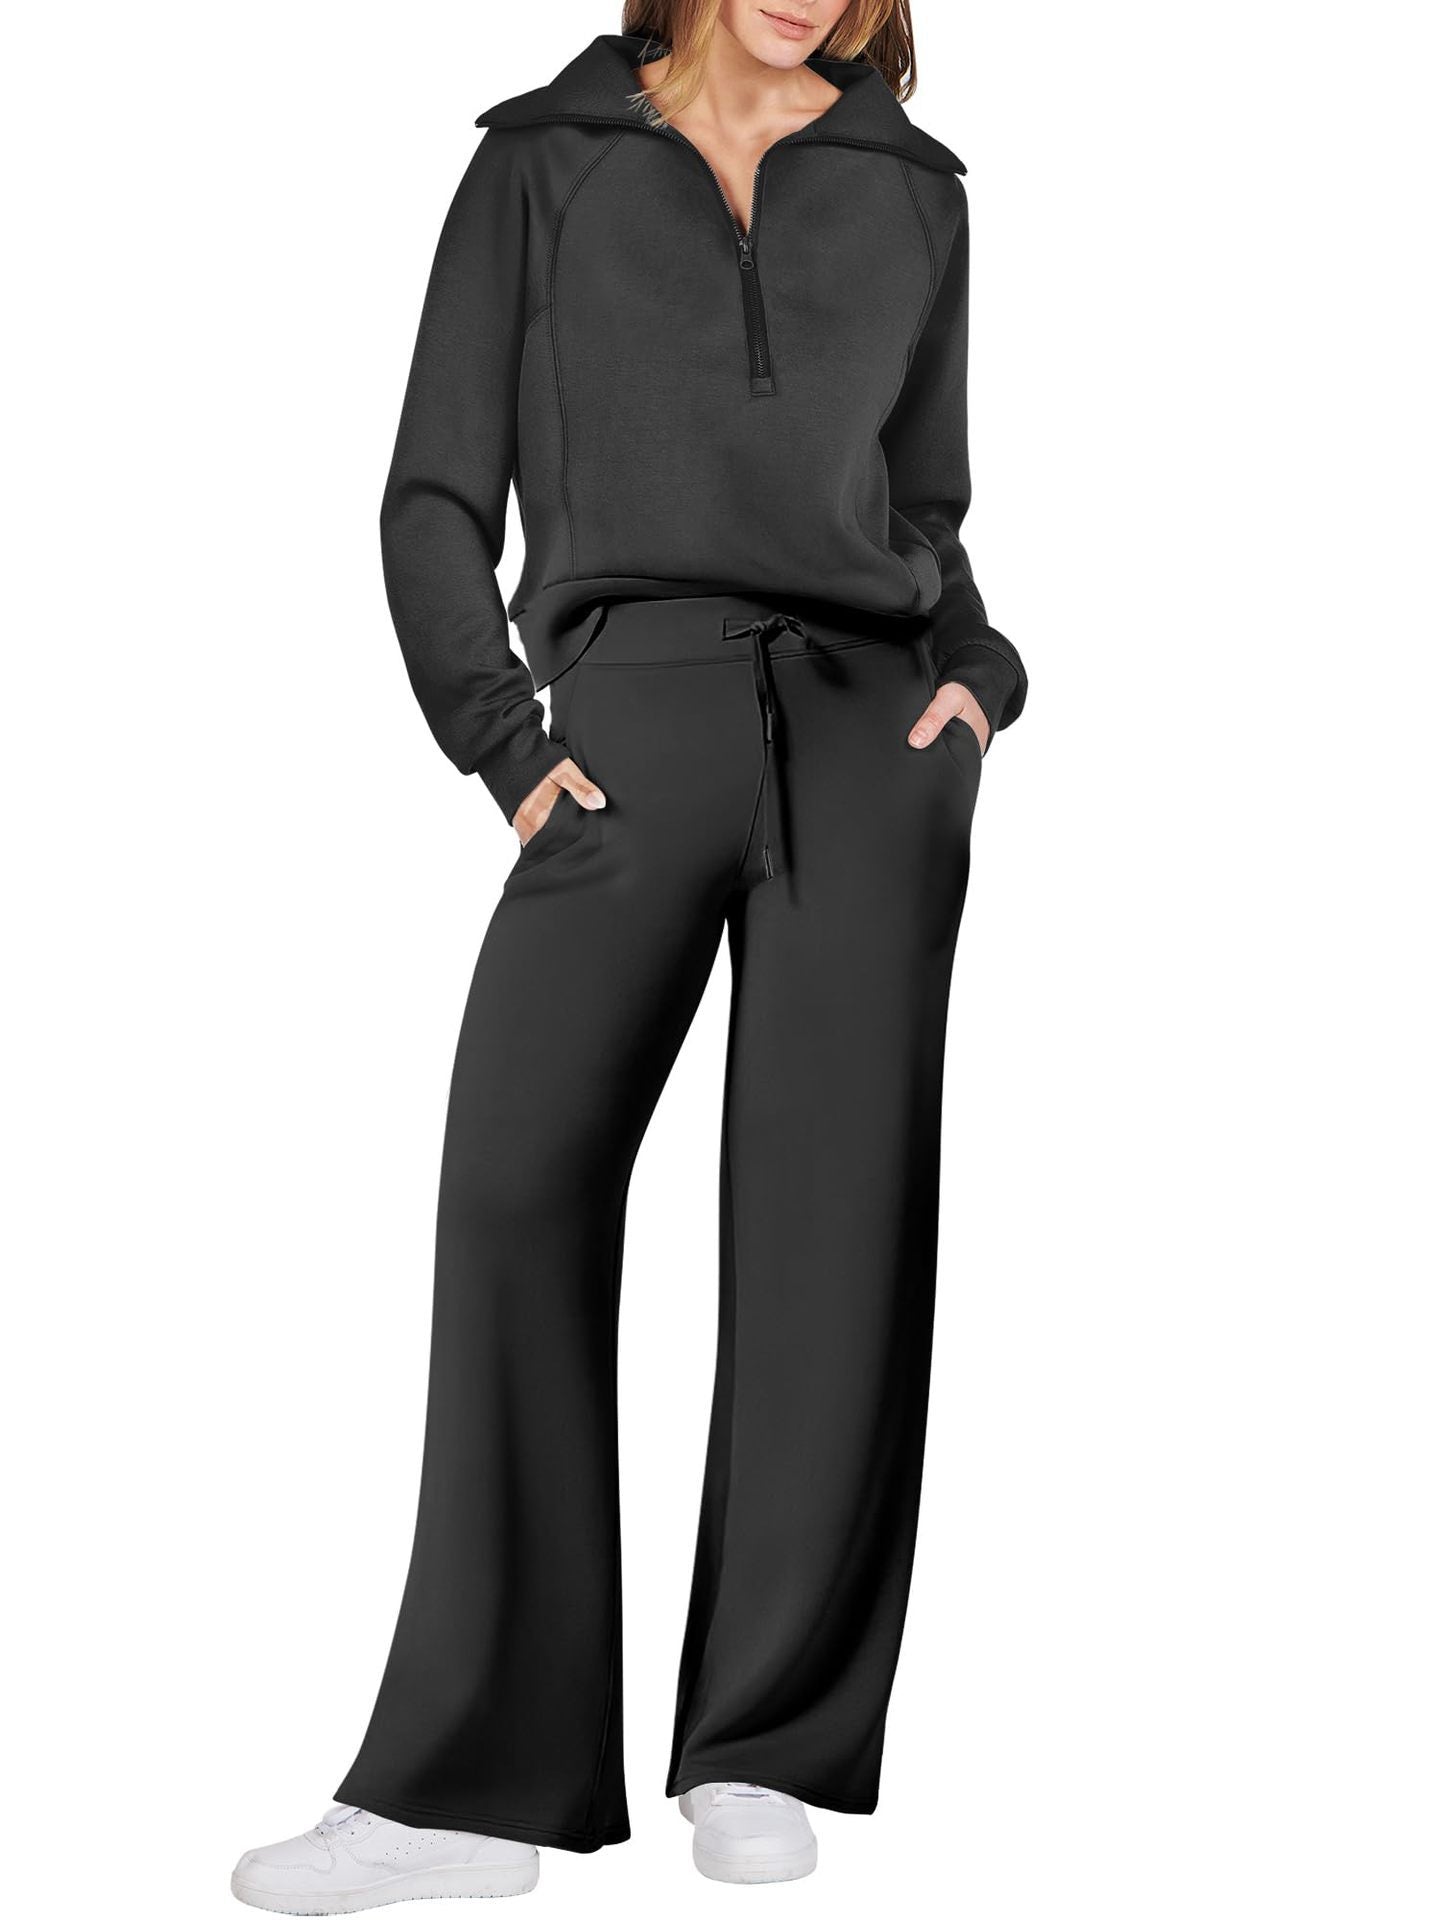 Leisure Sports Suit Long-sleeve Zipper Sweatshirt Wide Leg Pants Two-piece Set